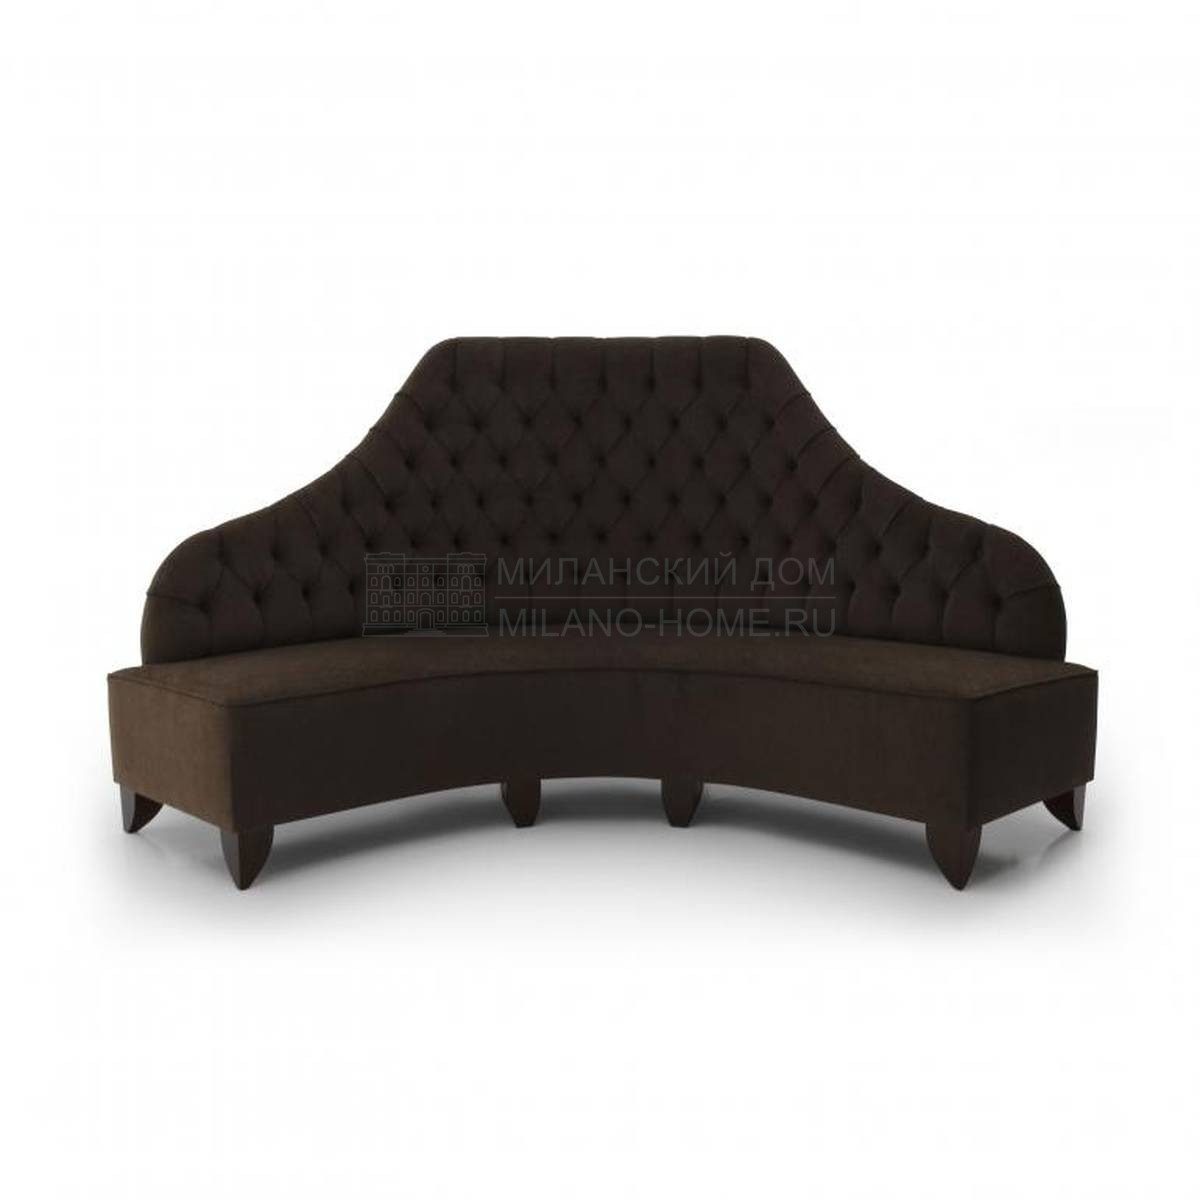 Модульный диван Custom010 из Италии фабрики SEVEN SEDIE